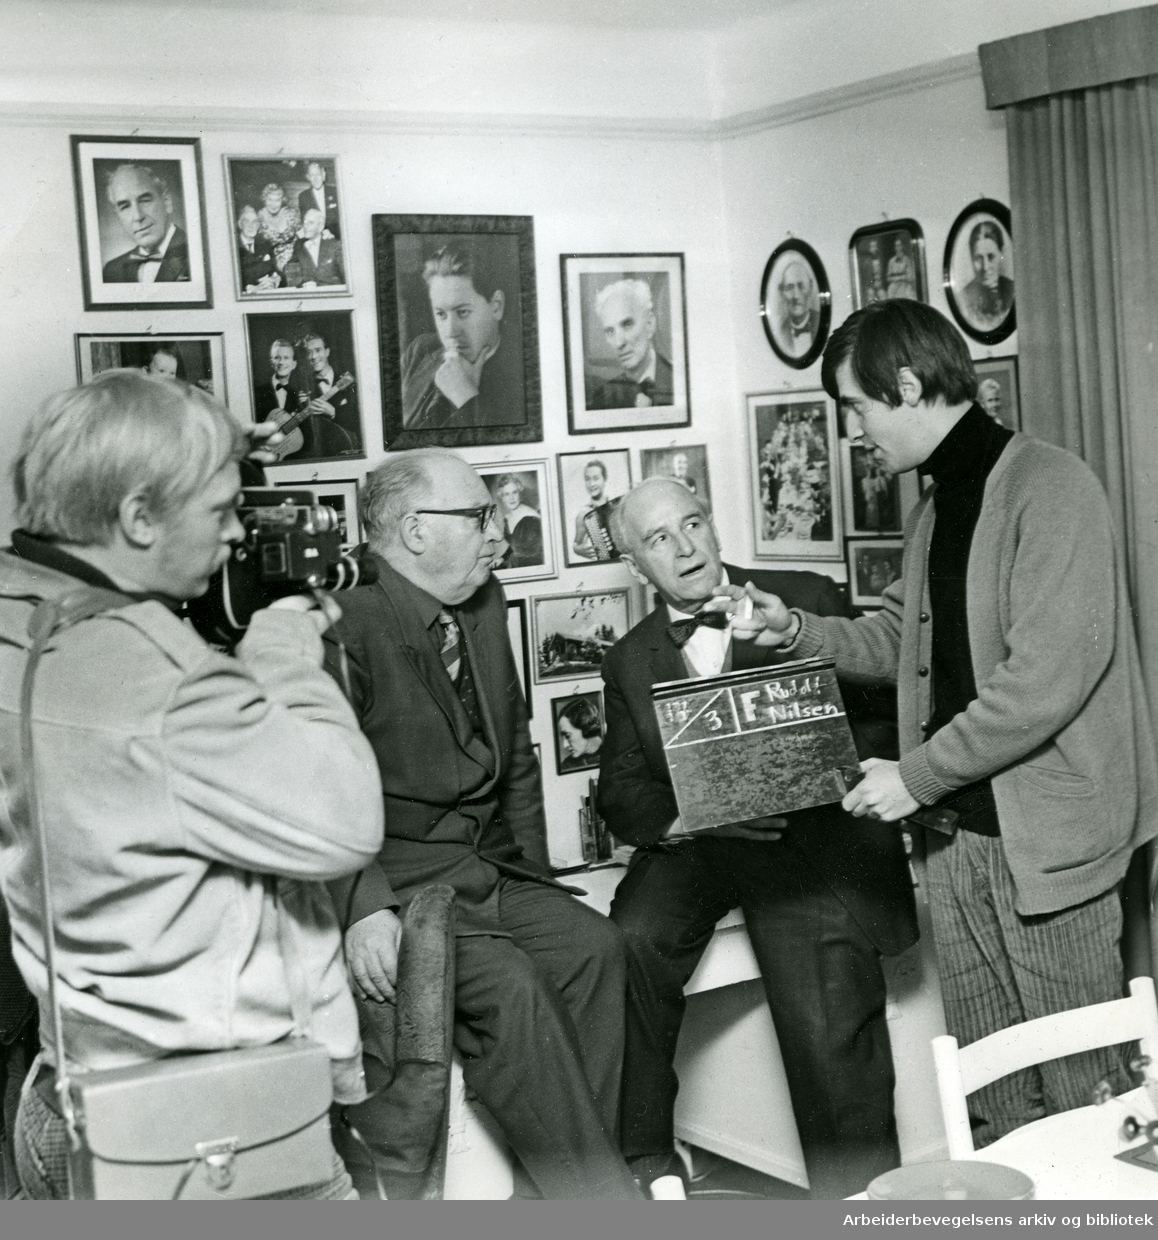 Innspilling av en svensk film om Rudolf Nilsen. Opptaket skjer hjemme hos Arne Paasche Aasen. Fra v.: fotograf Bjørn Arahb, Aksel Zachariassen, Arne Paasche Aasen og manusforfatter Christer Hulthén, 18 mars 1967.